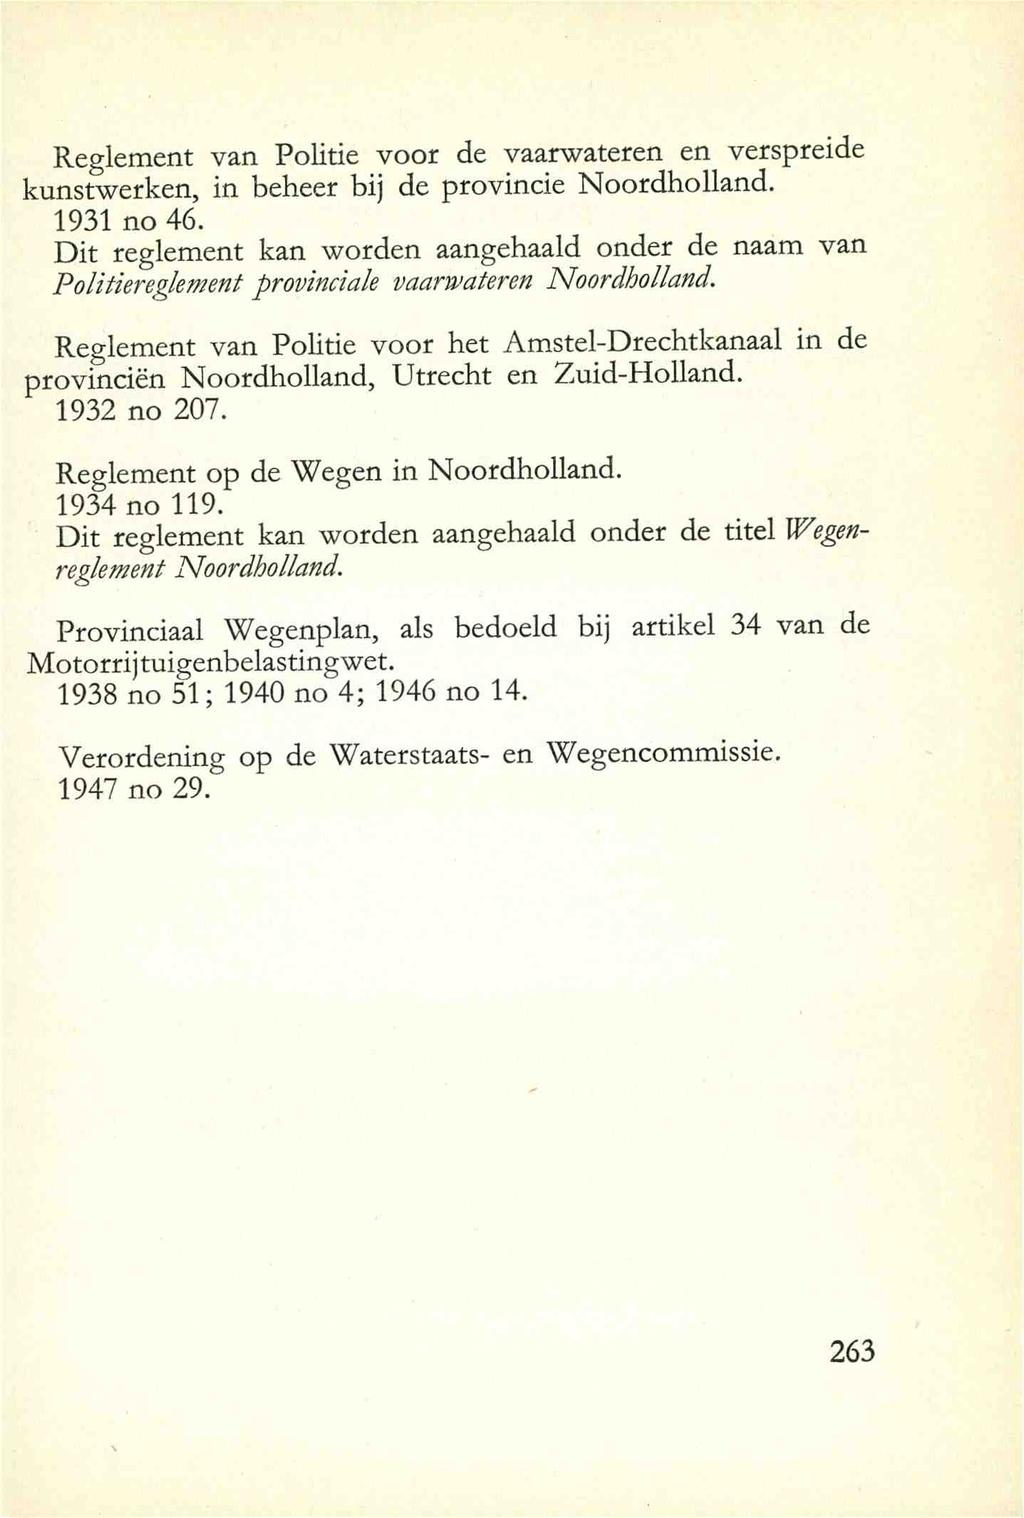 Reglement van Politic voor de vaarwateren en verspreide kunstwerken, in beheer bij de provincie Noordholland. 1931 no 46.